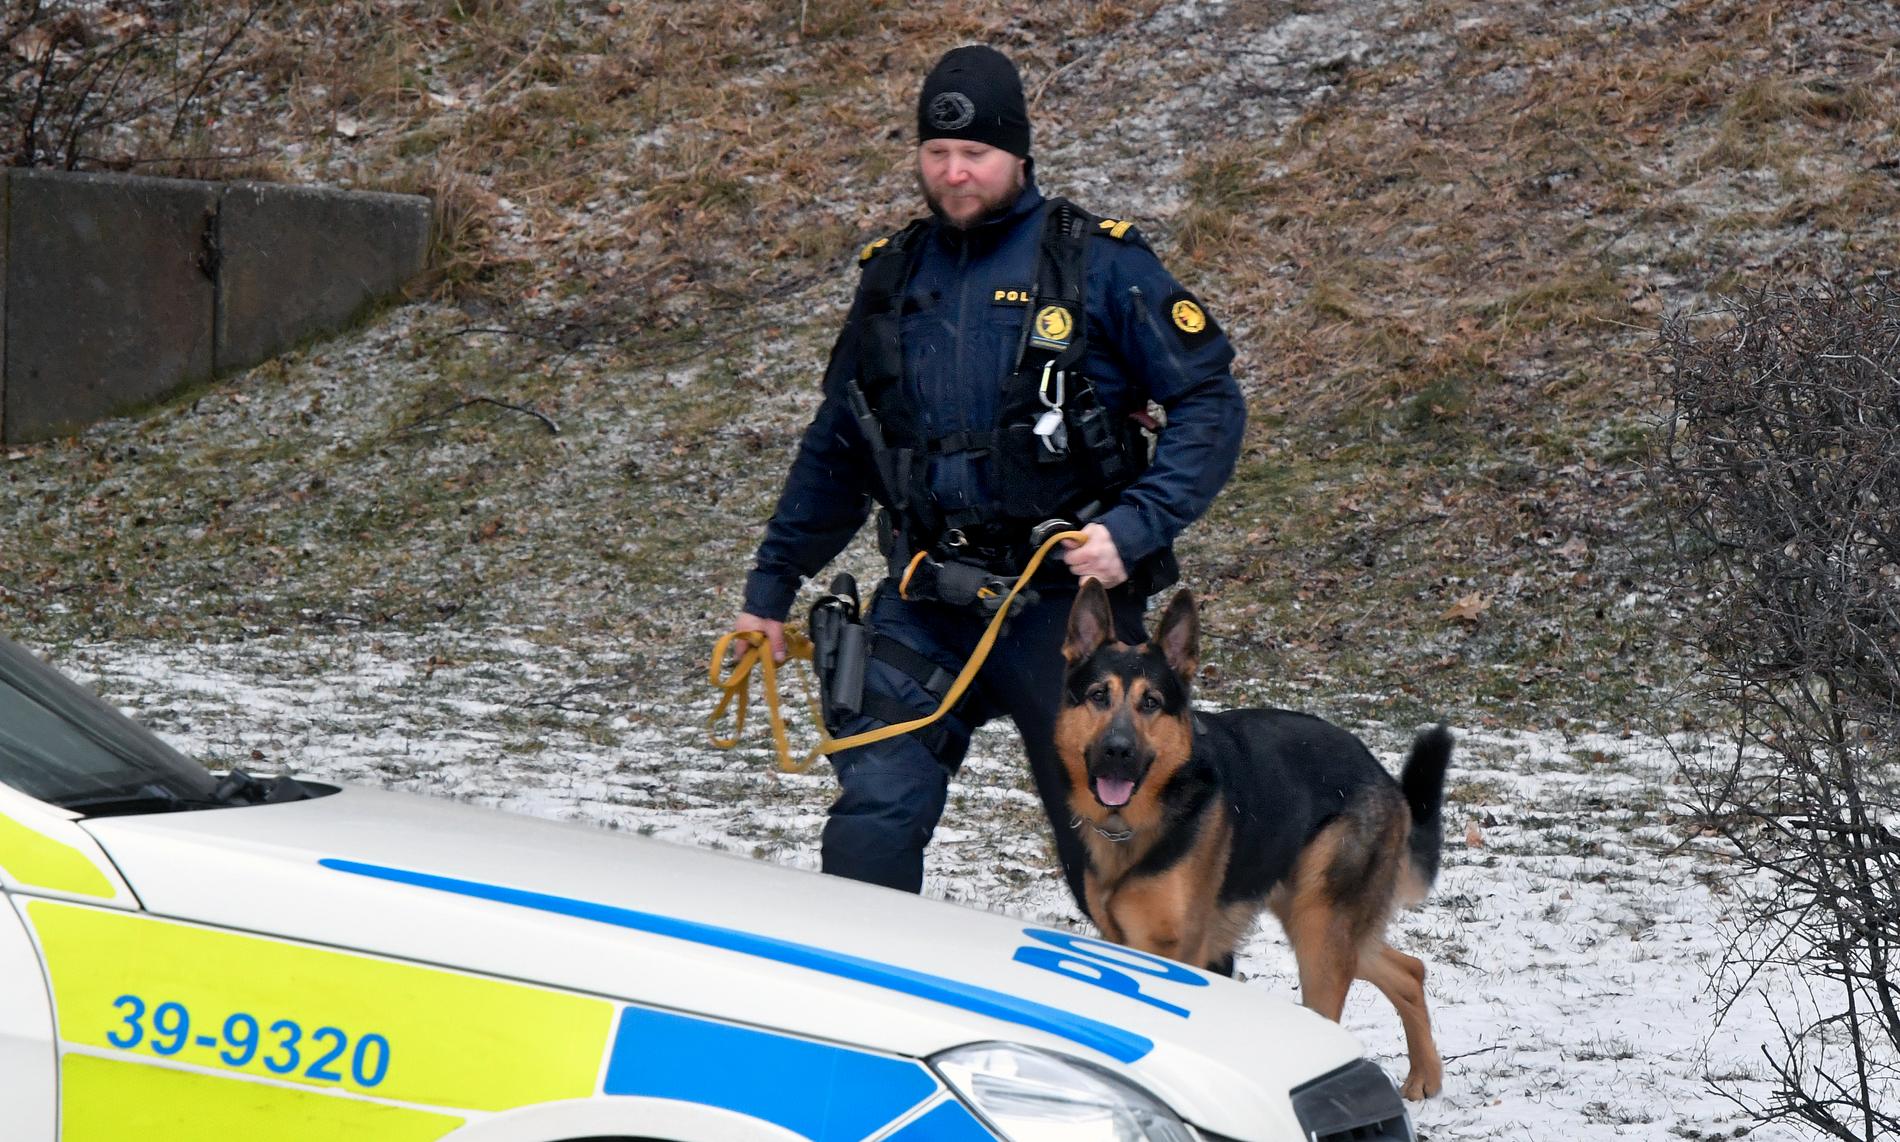 Polis på plats efter att en man har blivit knivhuggen i bröstet i Tumba söder om Stockholm.  